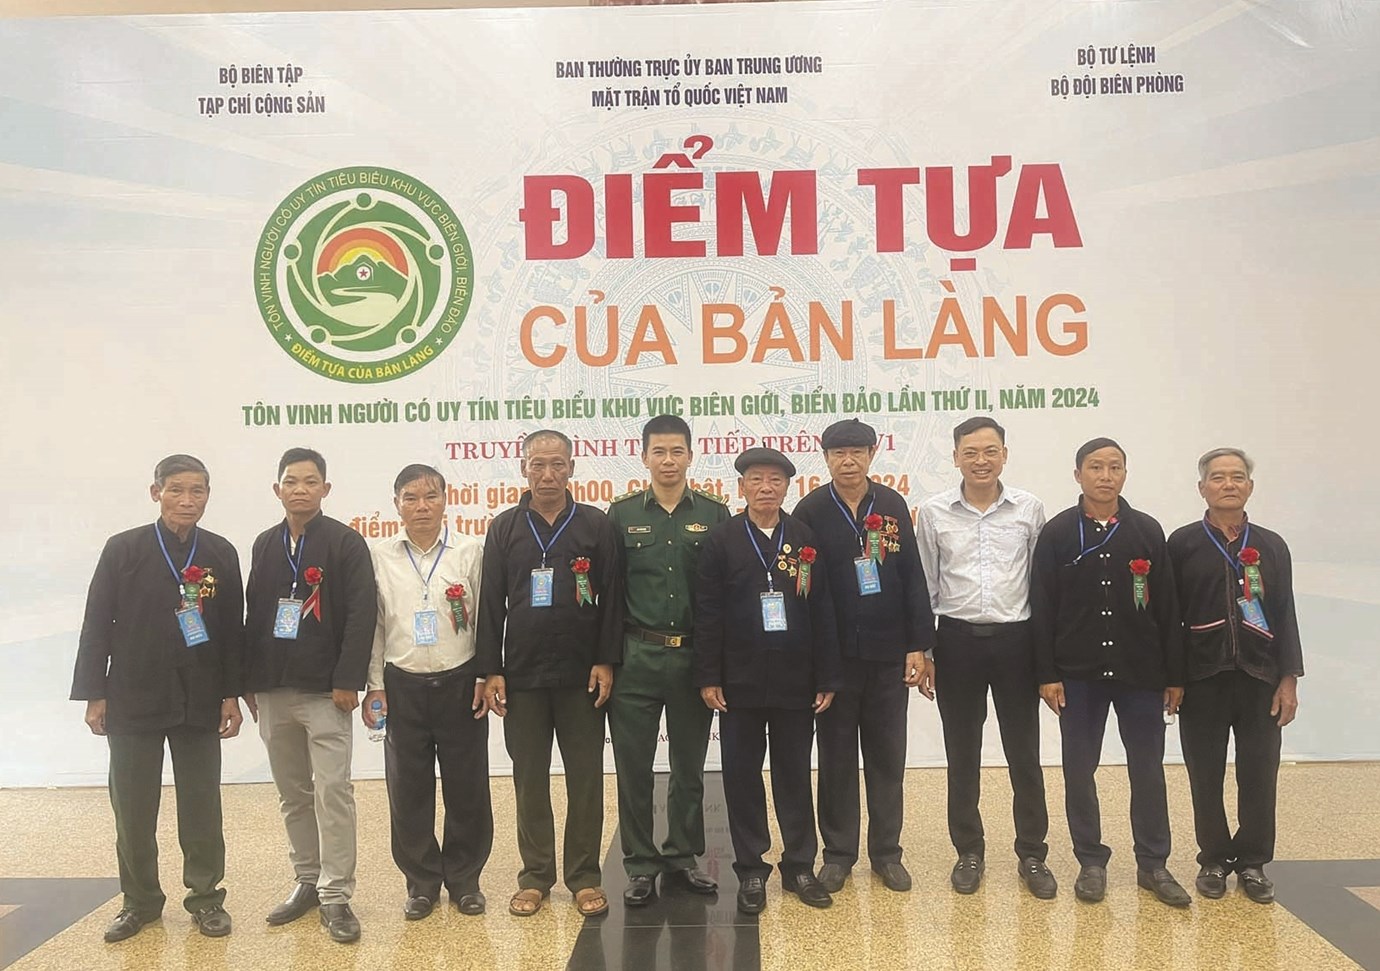 Đoàn Người có uy tín tiêu biểu tỉnh Điện Biên tham dự chương trình “Điểm tựa của bản làng lần thứ 2 năm 2024”